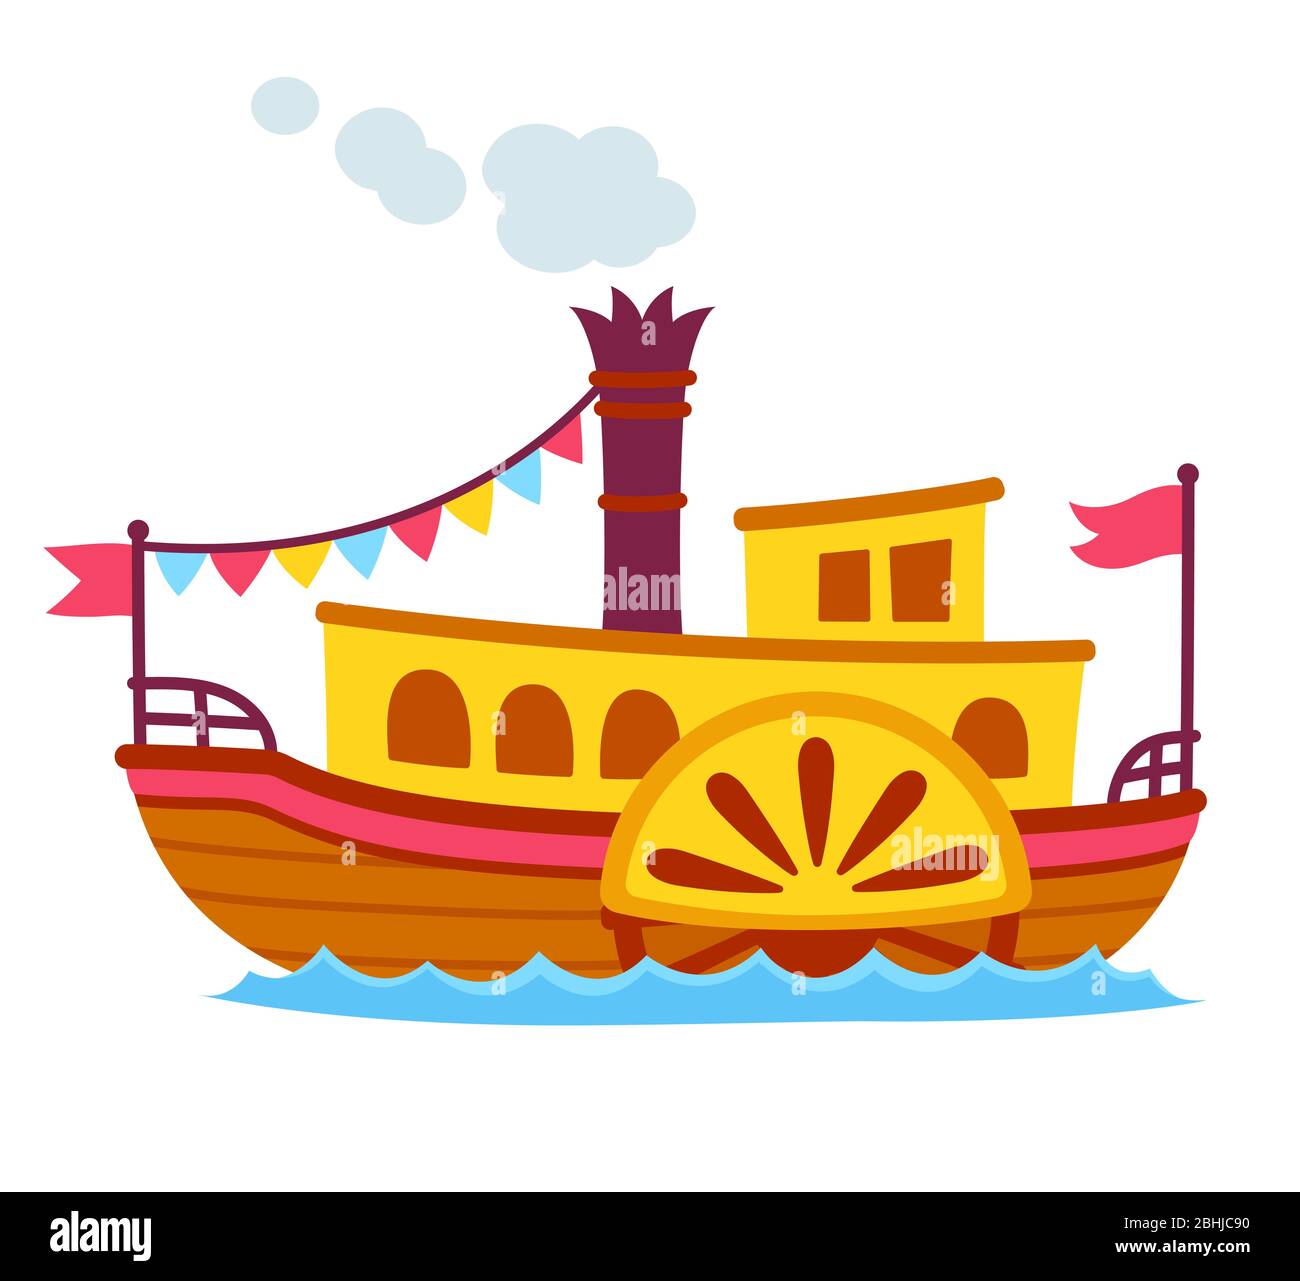 Helle Cartoon Retro Dampfschiff mit Seitenrad Paddel. Alte vintage Schiff Vektor-Illustration, niedlich und einfache Zeichnung. Stock Vektor